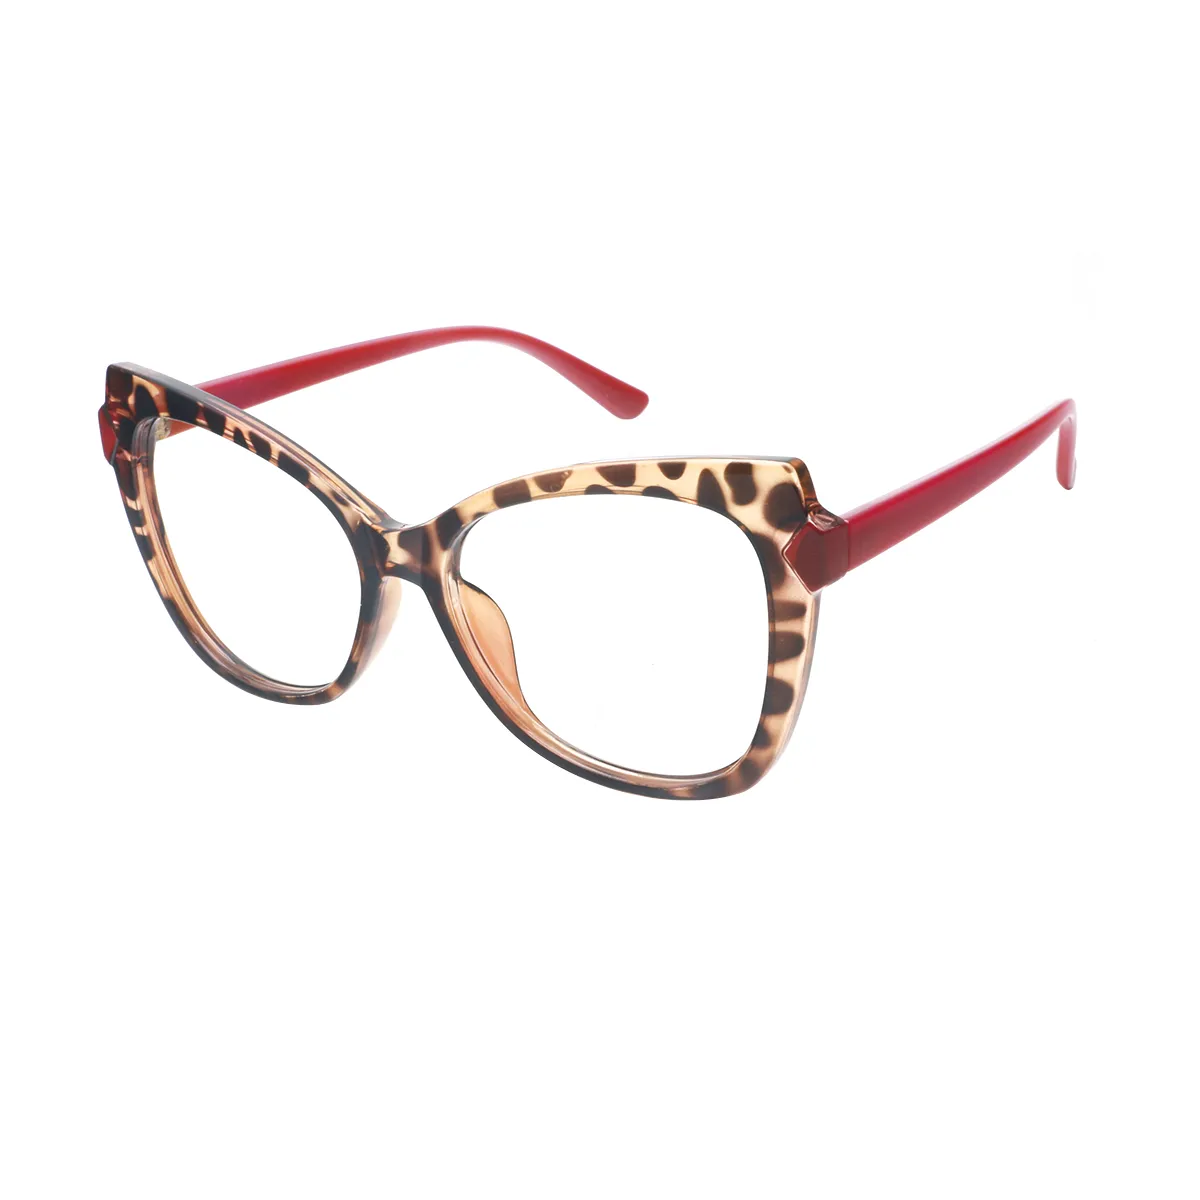 Mavis - Cat-eye Tortoiseshell Glasses for Women